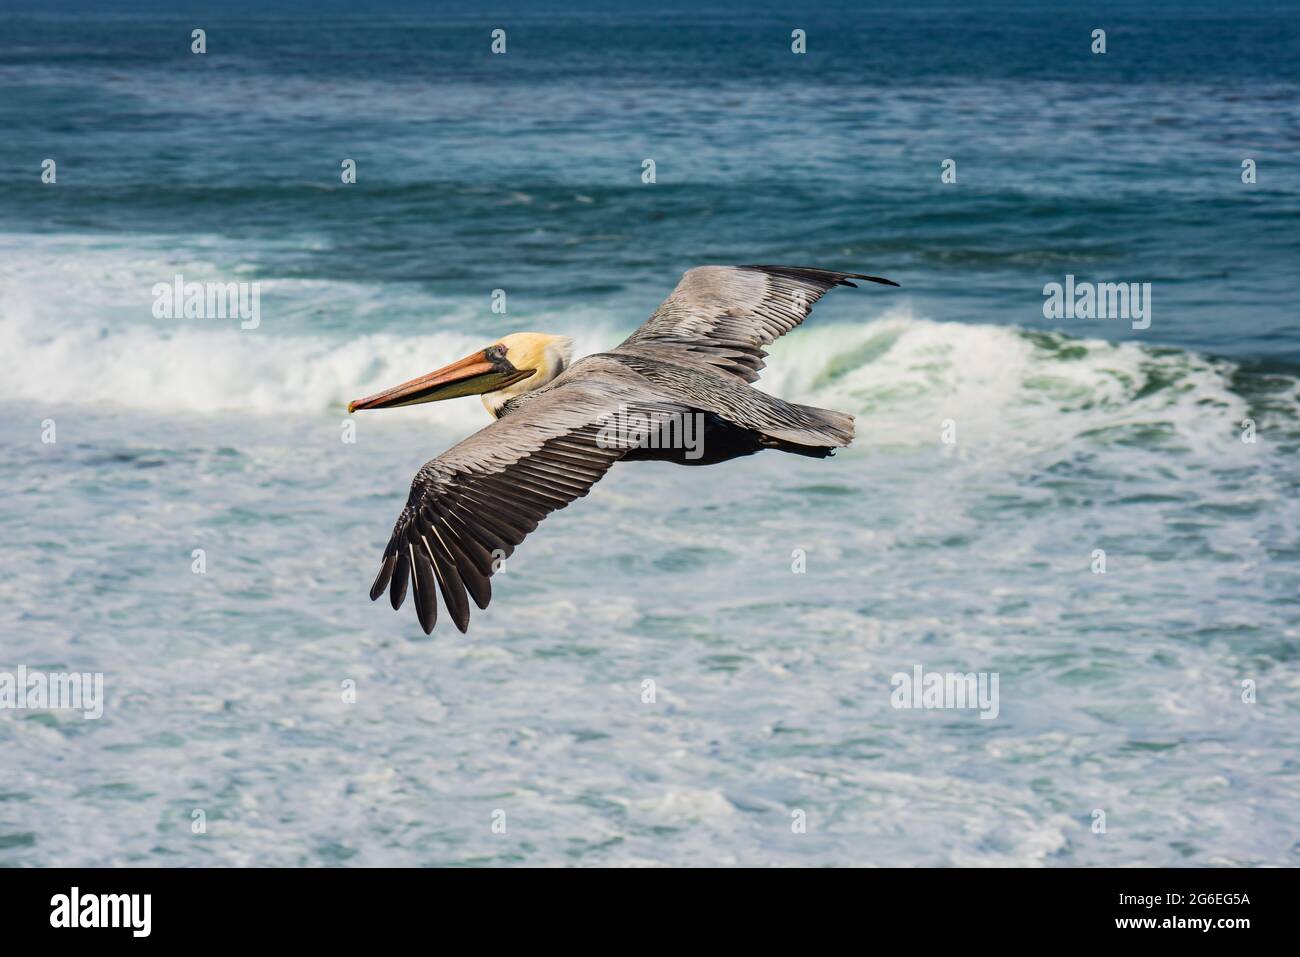 Pelicano marrón (Pelecanus occidentalis) con plumaje de apareamiento en vuelo sobre el oleaje oceánico Foto de stock